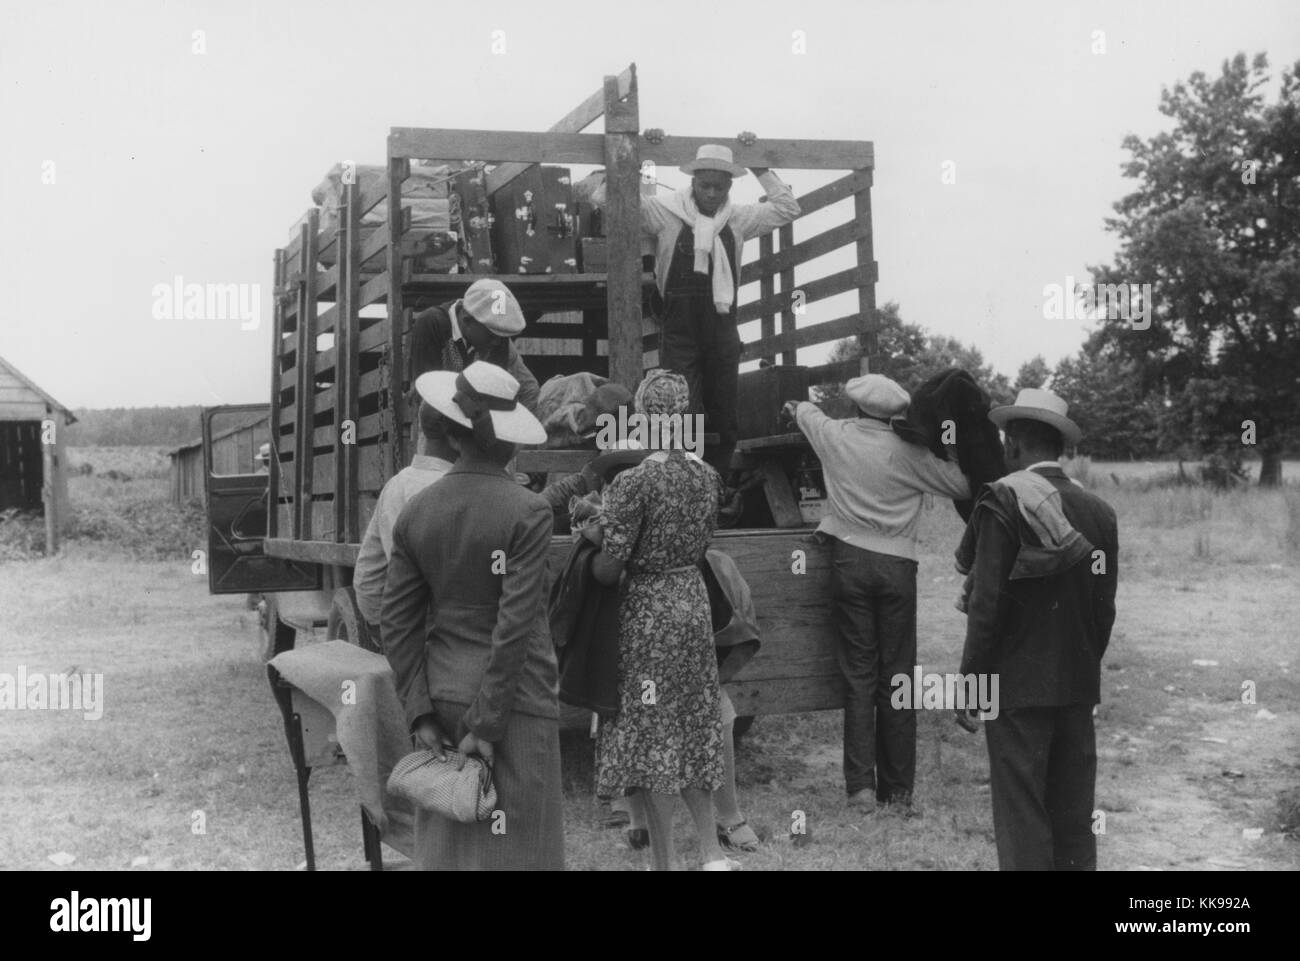 Ein Foto von Migrant farm workers Beladen eines Lkw mit ihren Habseligkeiten, das Bett des Staplers mit Regalen ausgestattet wurde, die die Breite des Fahrzeugs ihr Gepäck Overhead zu halten, Bänke aufgebaut wurden, für das Volk, die Arbeiter sind in Jacken, Hosen und Kleider gekleidet, wie sie Reisen nach Einziges, Virginia aus North Carolina Belcross werden landwirtschaftliche Arbeit zu suchen, 1940. Von der New York Public Library. Stockfoto